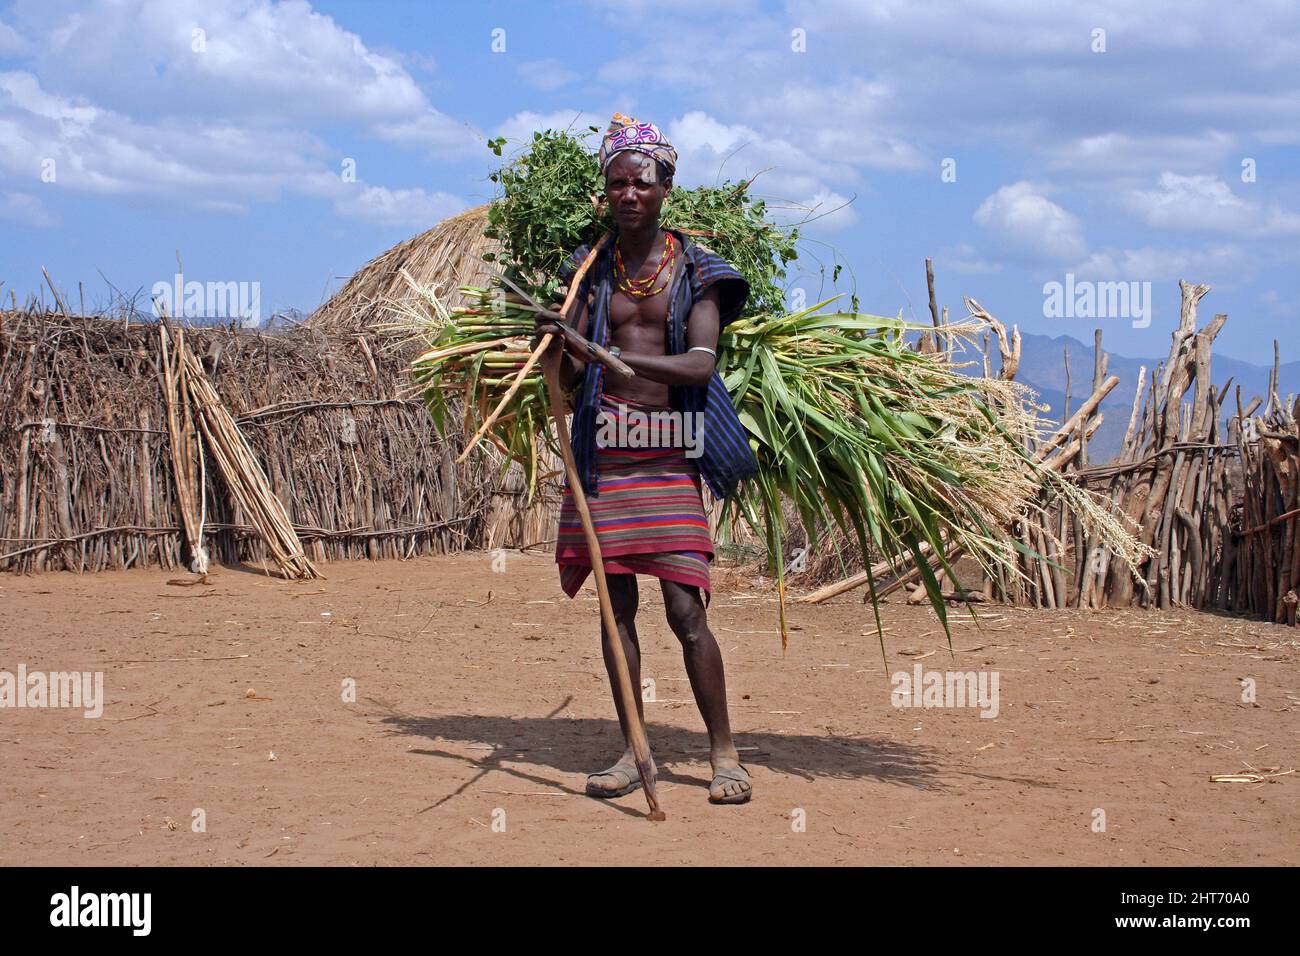 Arbore Tribe Man cargando cultivos Foto de stock